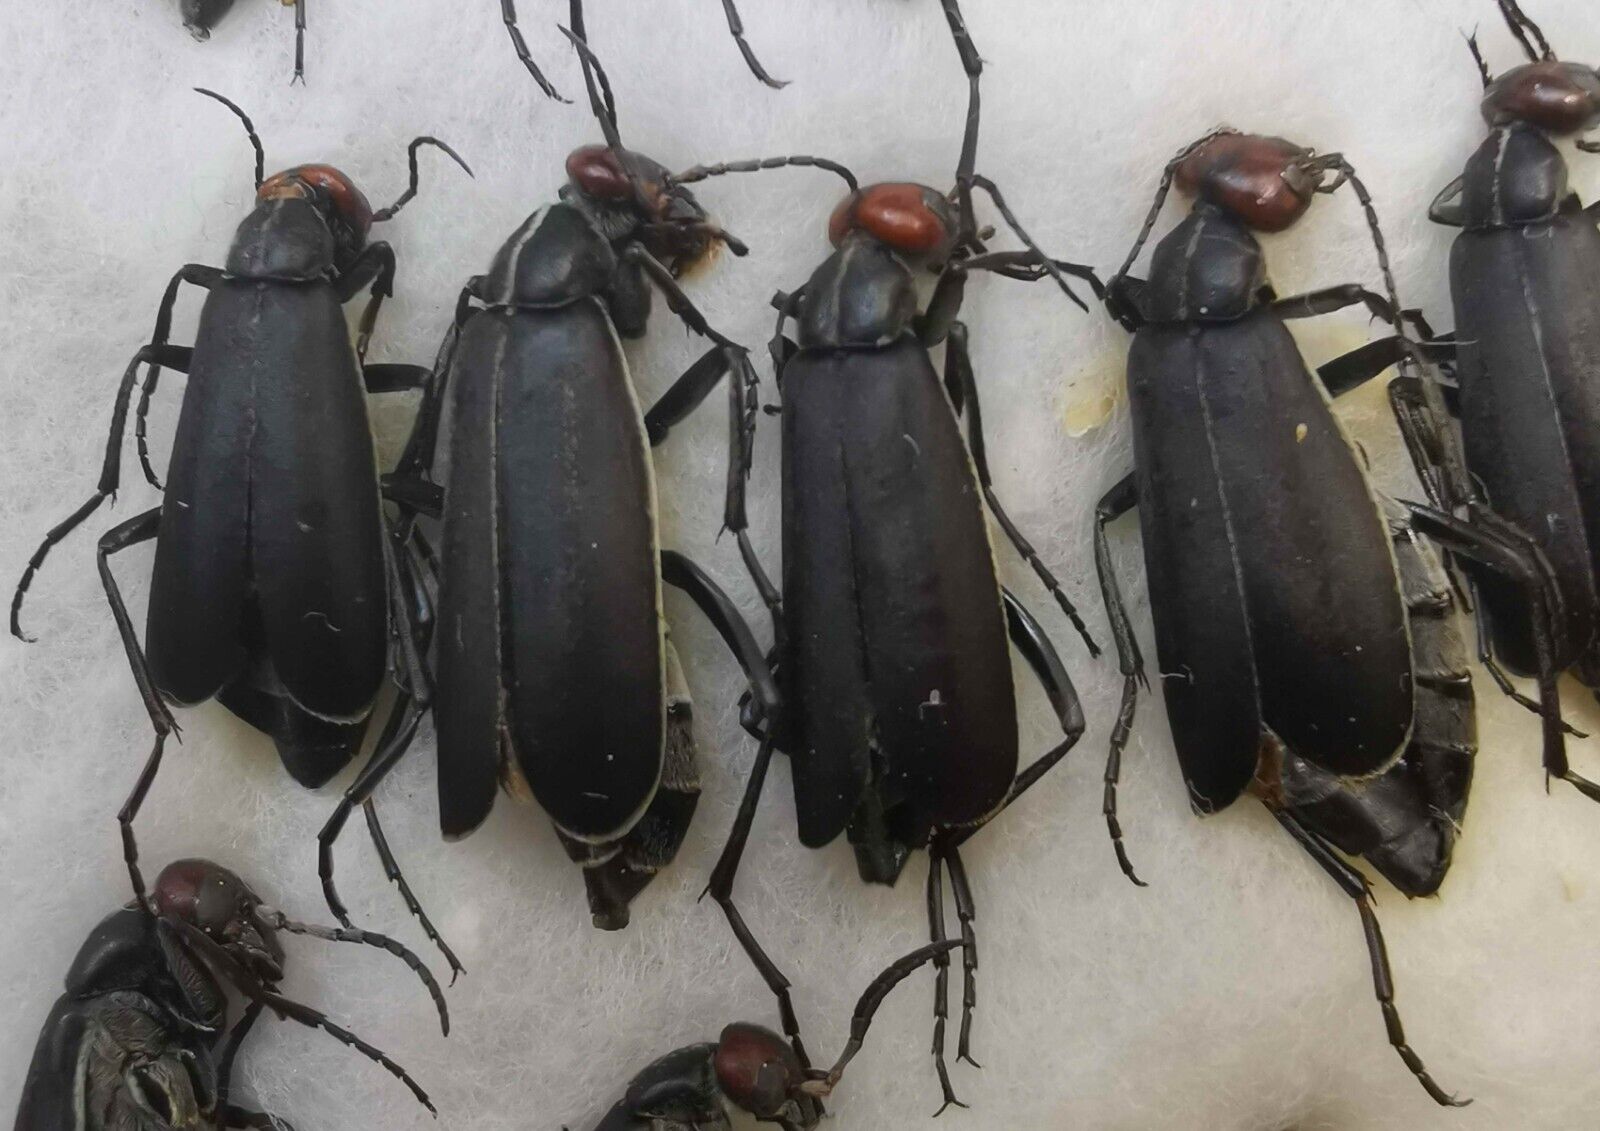 Epicauta rufidorsum Meloidae 4 pcs blister beetles from Southern Ukraine